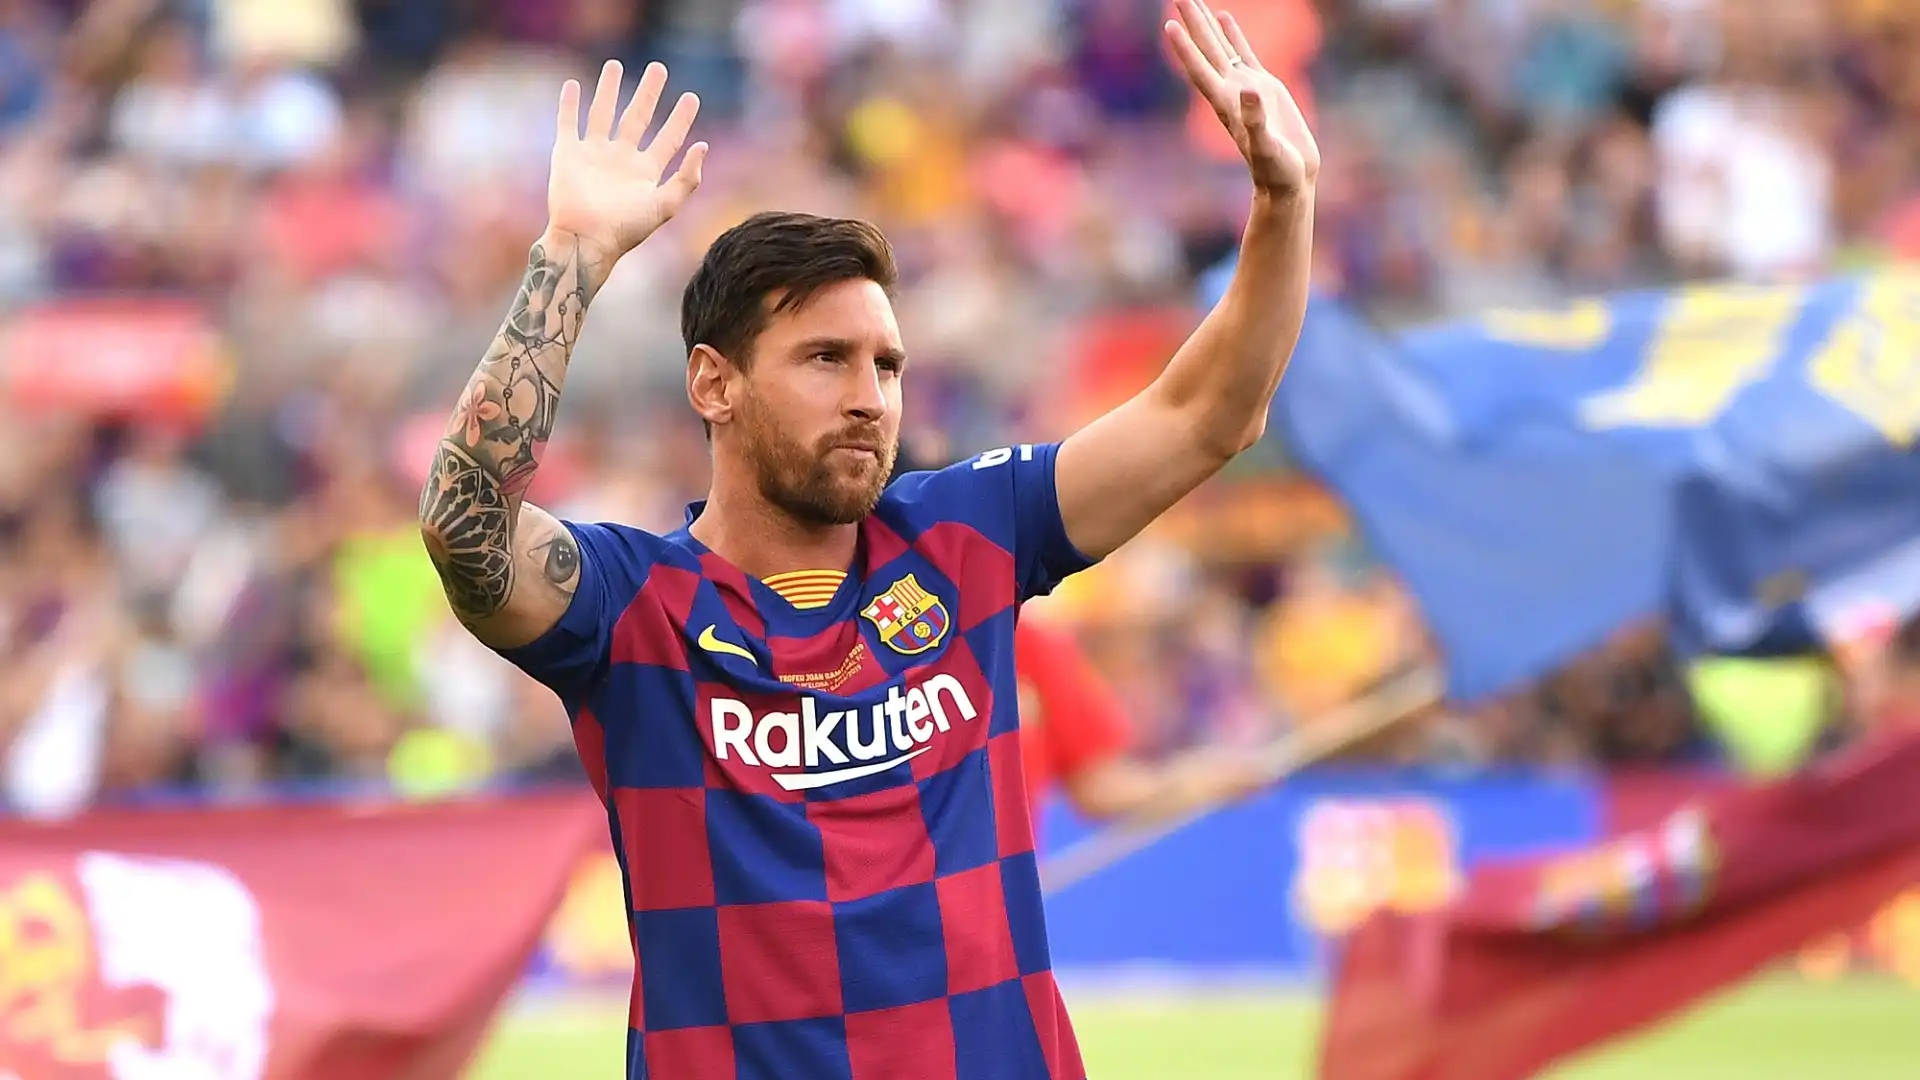 2019: Lionel Messi (calcio), guadagni totali stimati 127 milioni di dollari